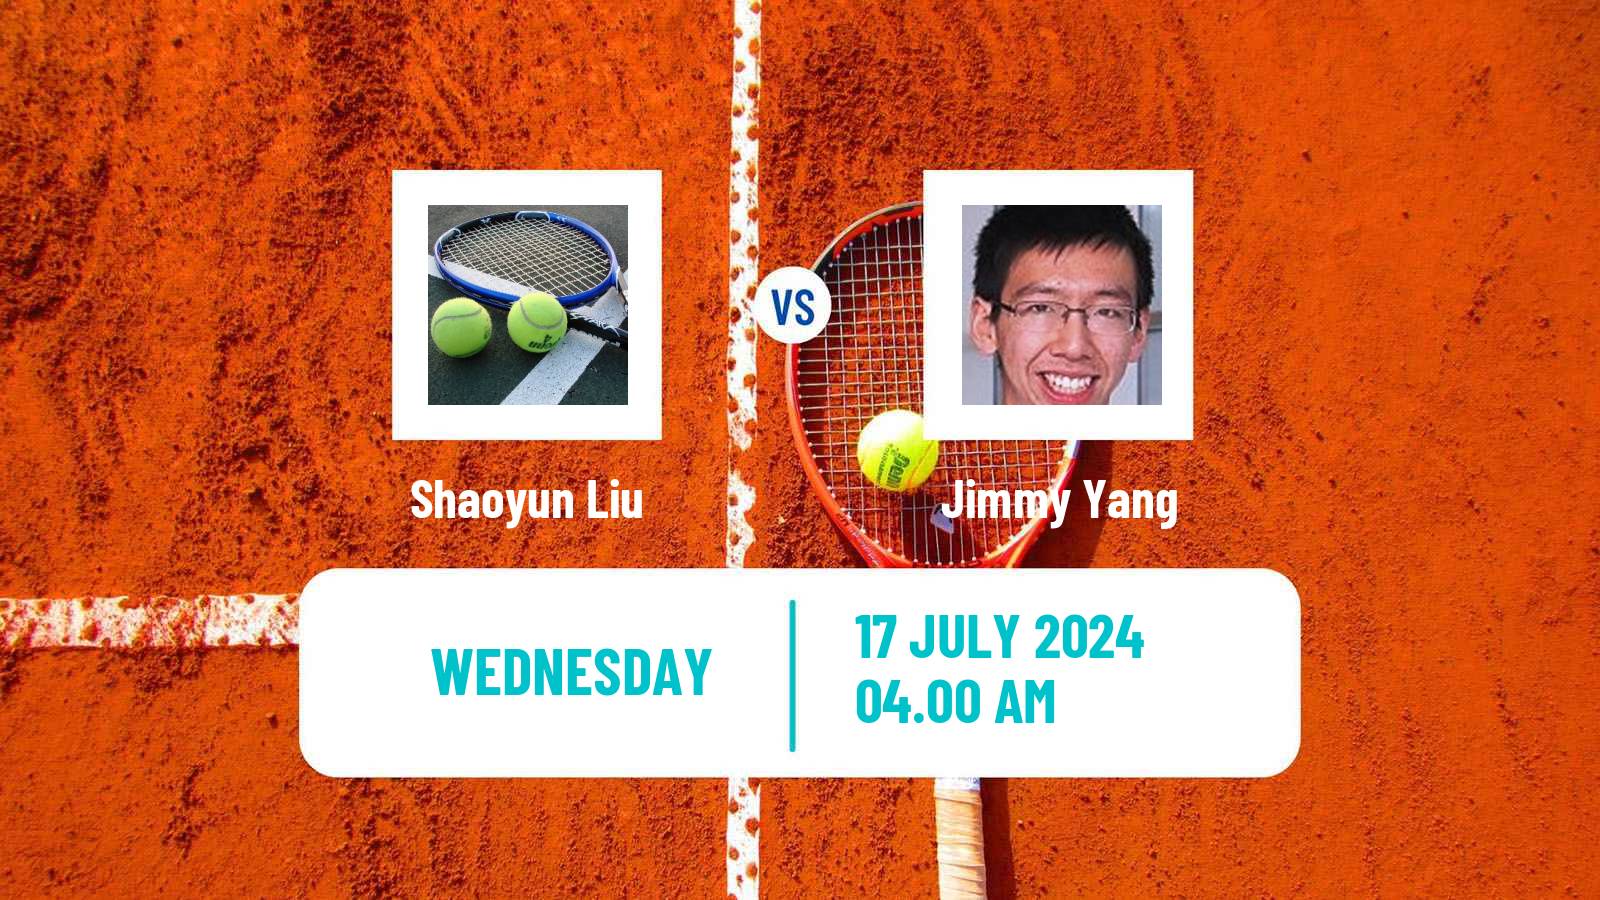 Tennis ITF M25 Tianjin 2 Men Shaoyun Liu - Jimmy Yang